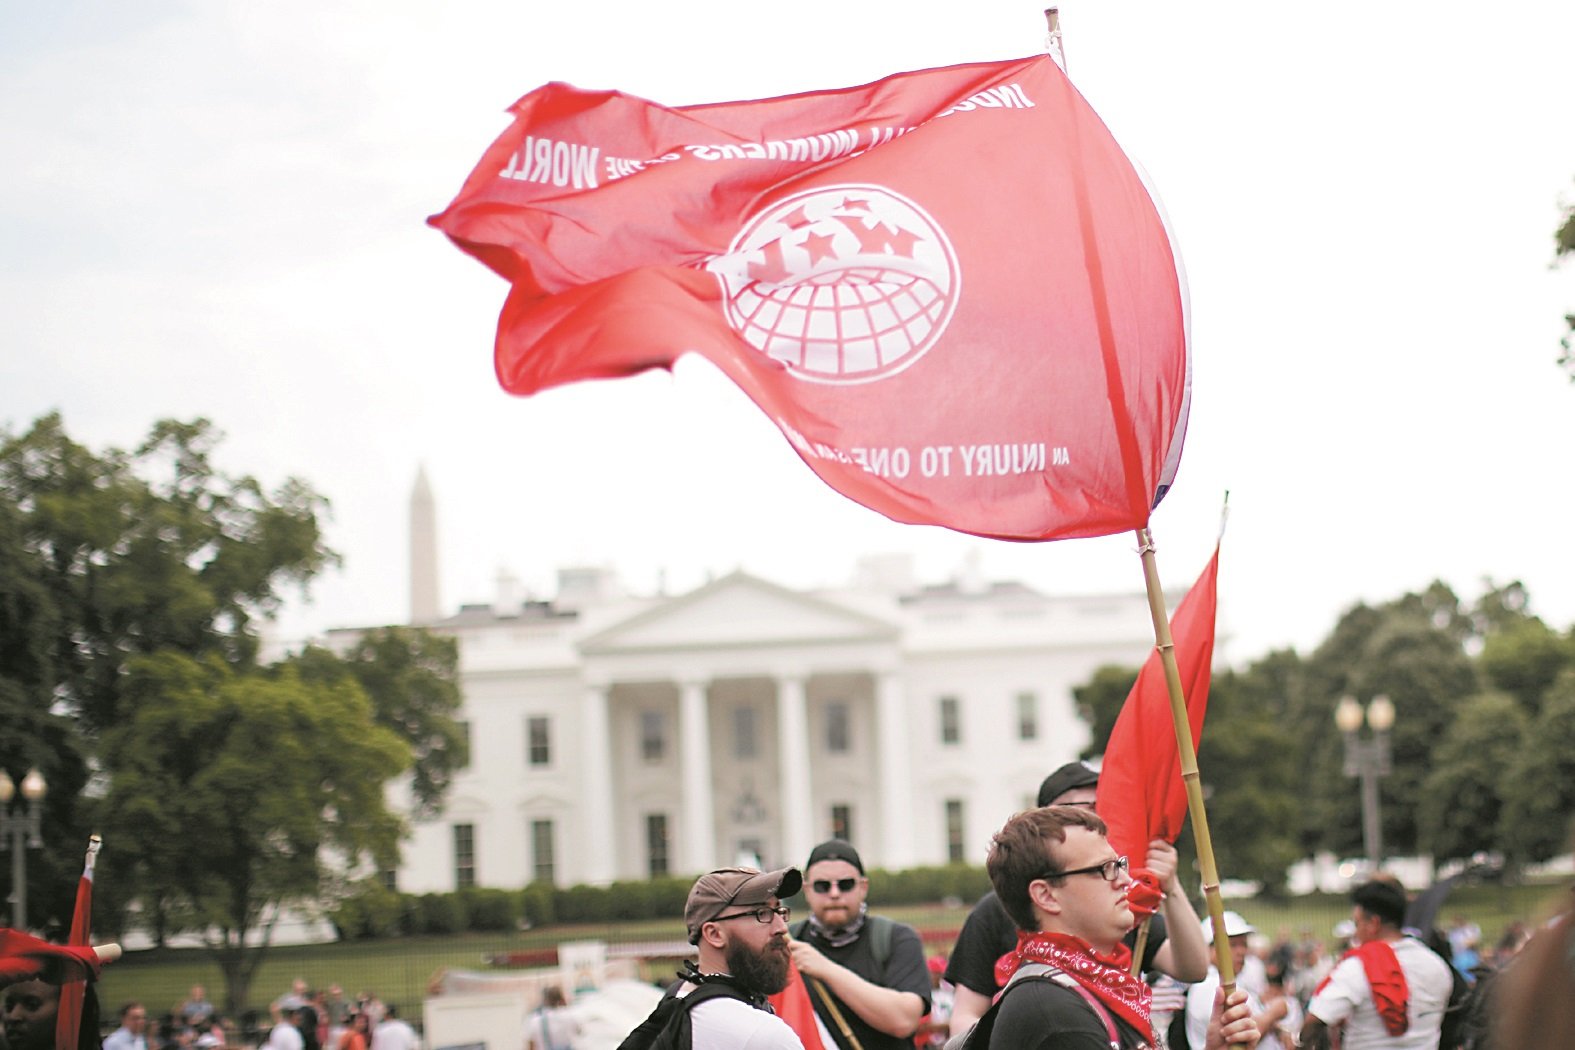 【美国】华盛顿的示威者，在白宫前的拉法叶公园集会，高举美国革命工会的旗帜，旗上写有“伤害一人就是伤害大家”的口号。